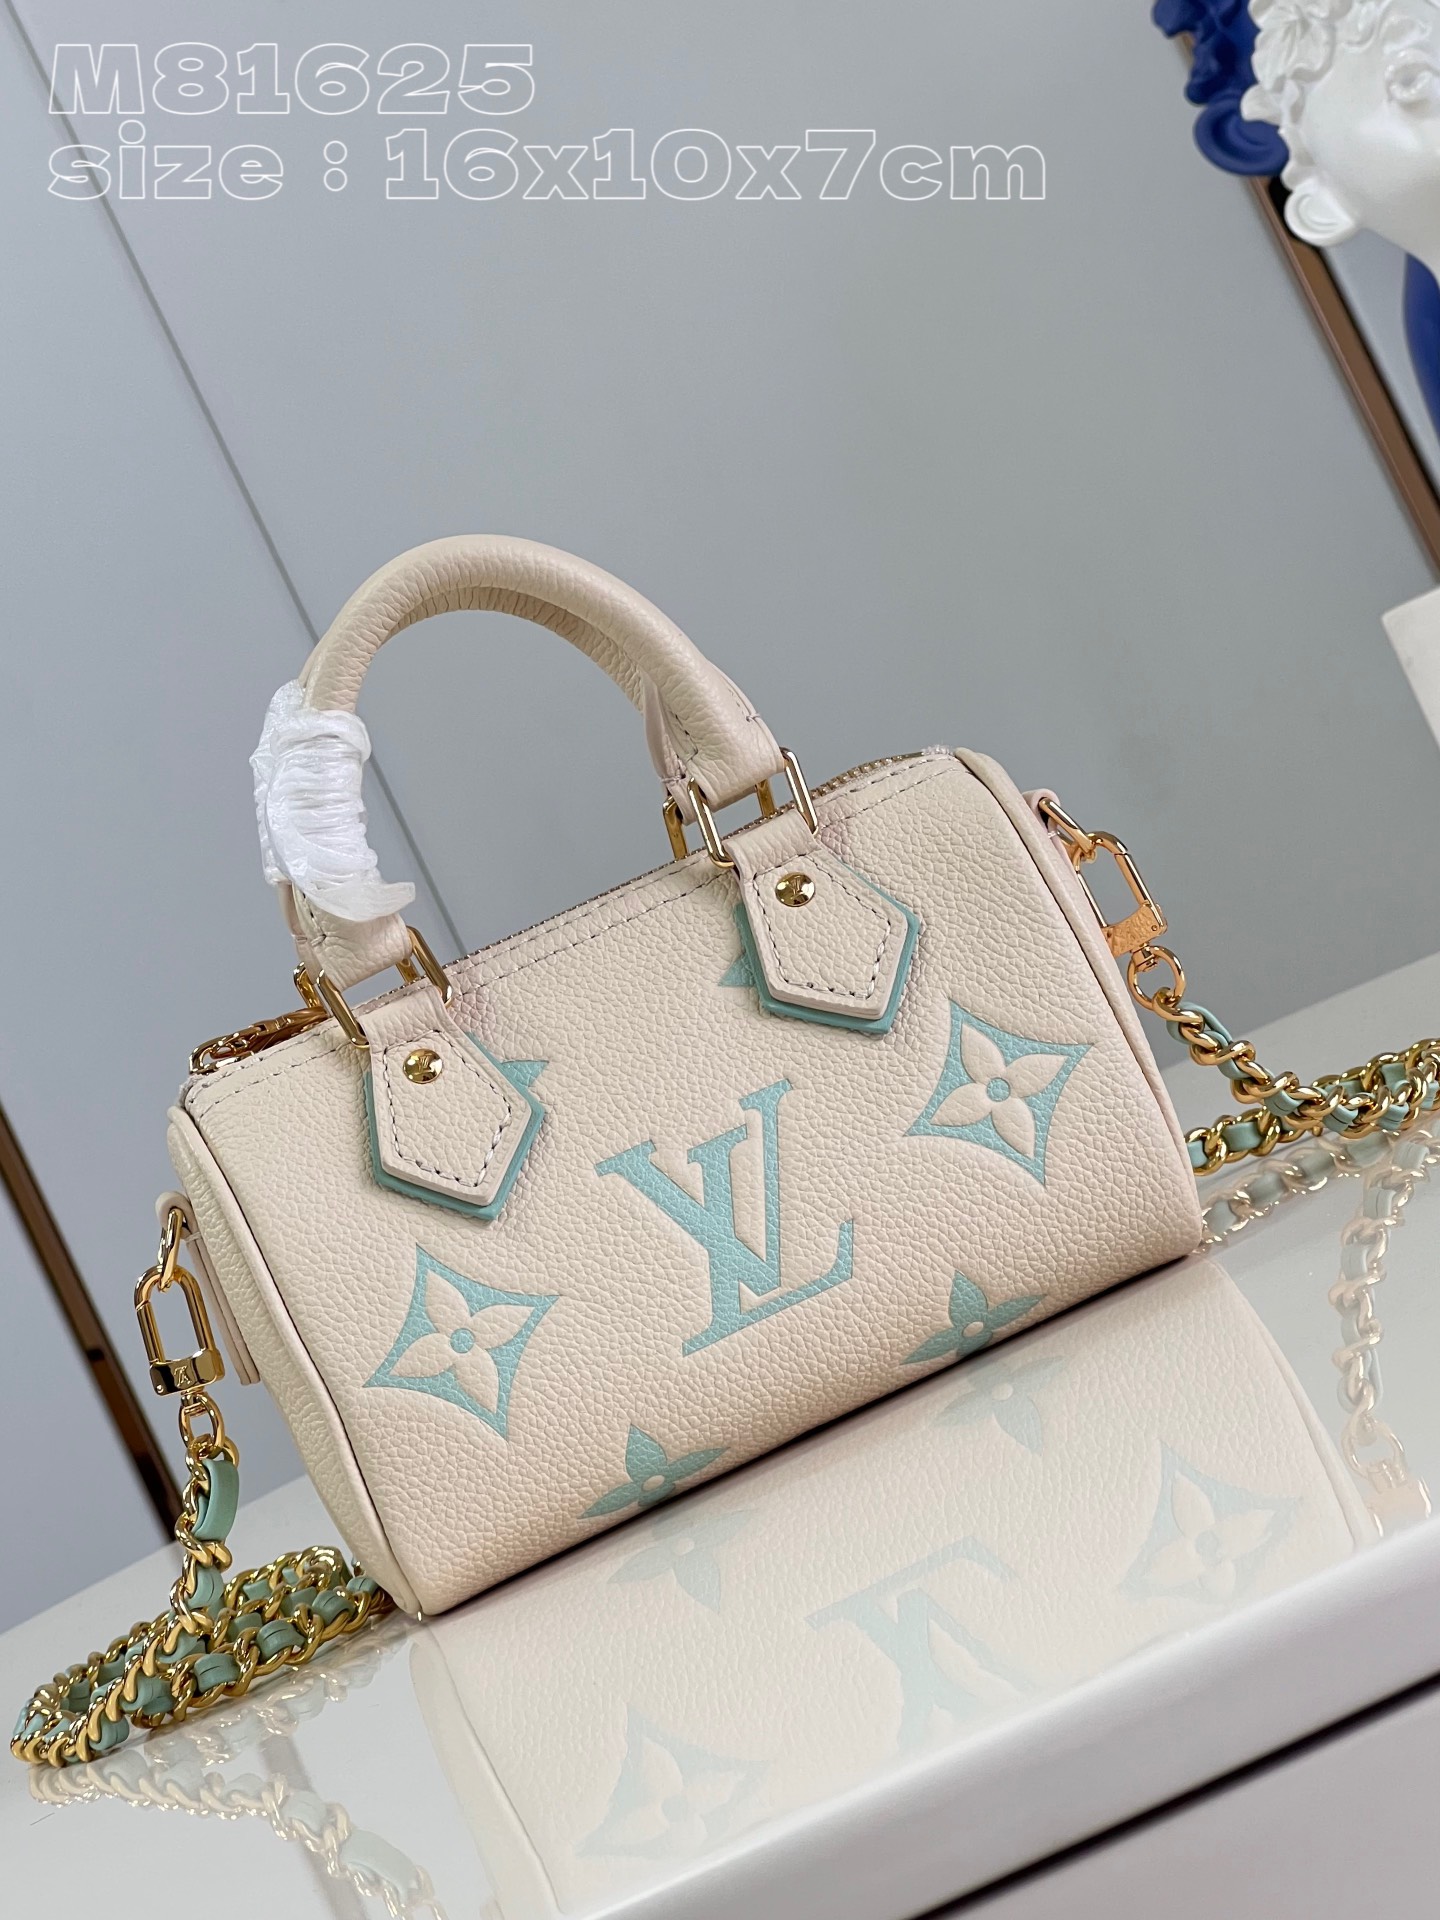 Where should I buy to receive
 Louis Vuitton LV Speedy Bags Handbags Designer 1:1 Replica
 Blue Printing Empreinte​ M81625